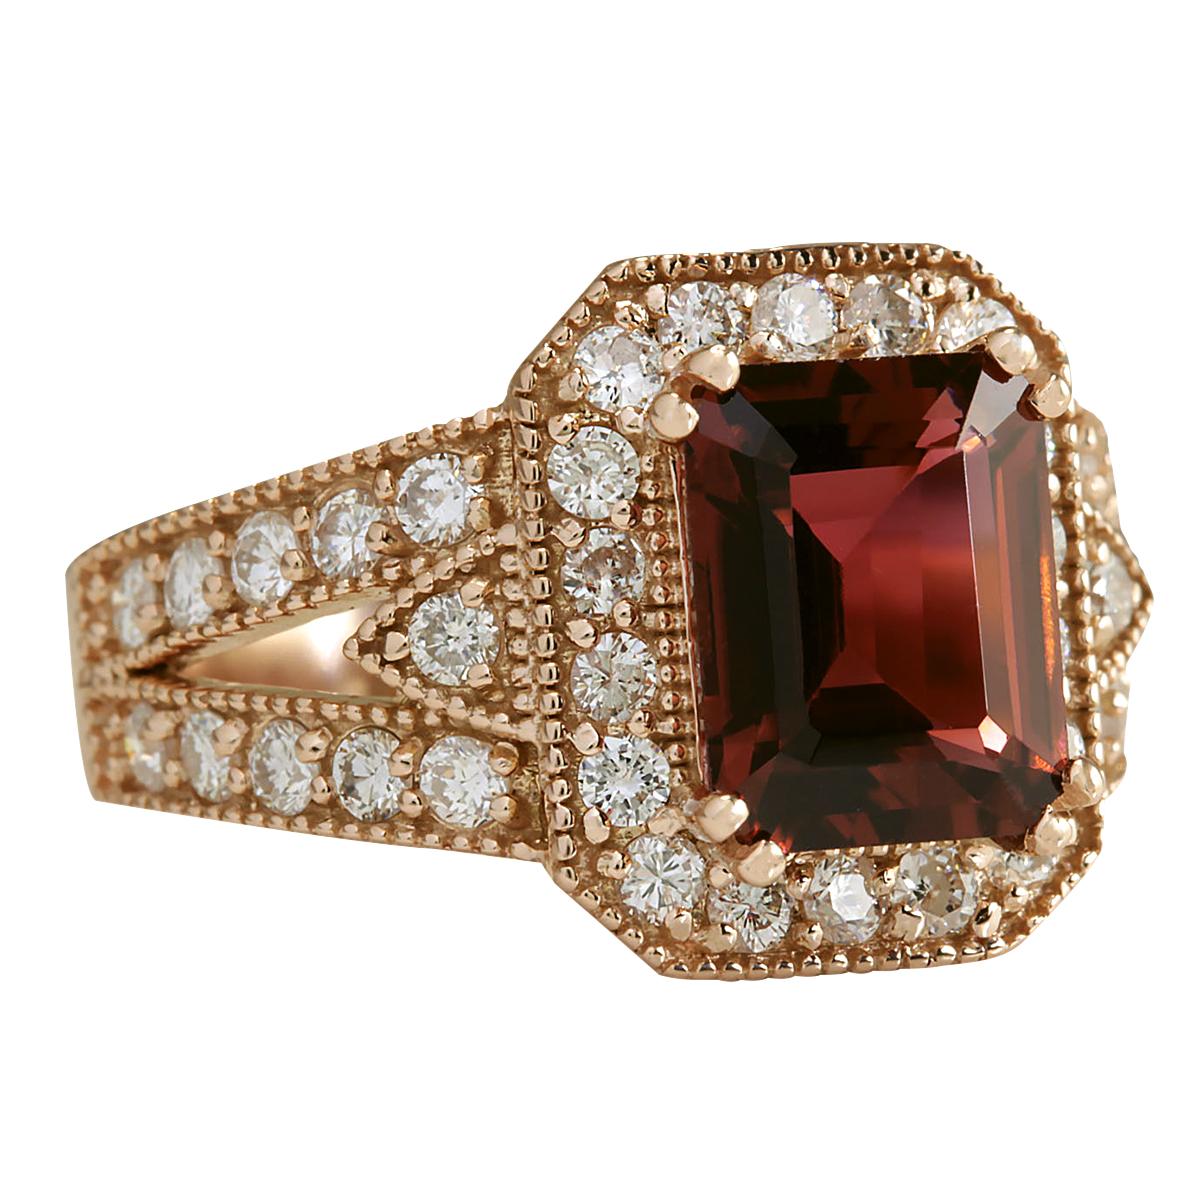 3.89 Carat Natural Tourmaline 14 Karat Rose Gold Diamond Ring
Stamped: 14K Rose Gold
Total Ring Weight: 7.6 Grams
 Total Natural Tourmaline Weight is 2.79 Carat (Measures: 9.00x7.00 mm)
Color: Pink
Total Natural Diamond Weight is 1.10 Carat
Color: